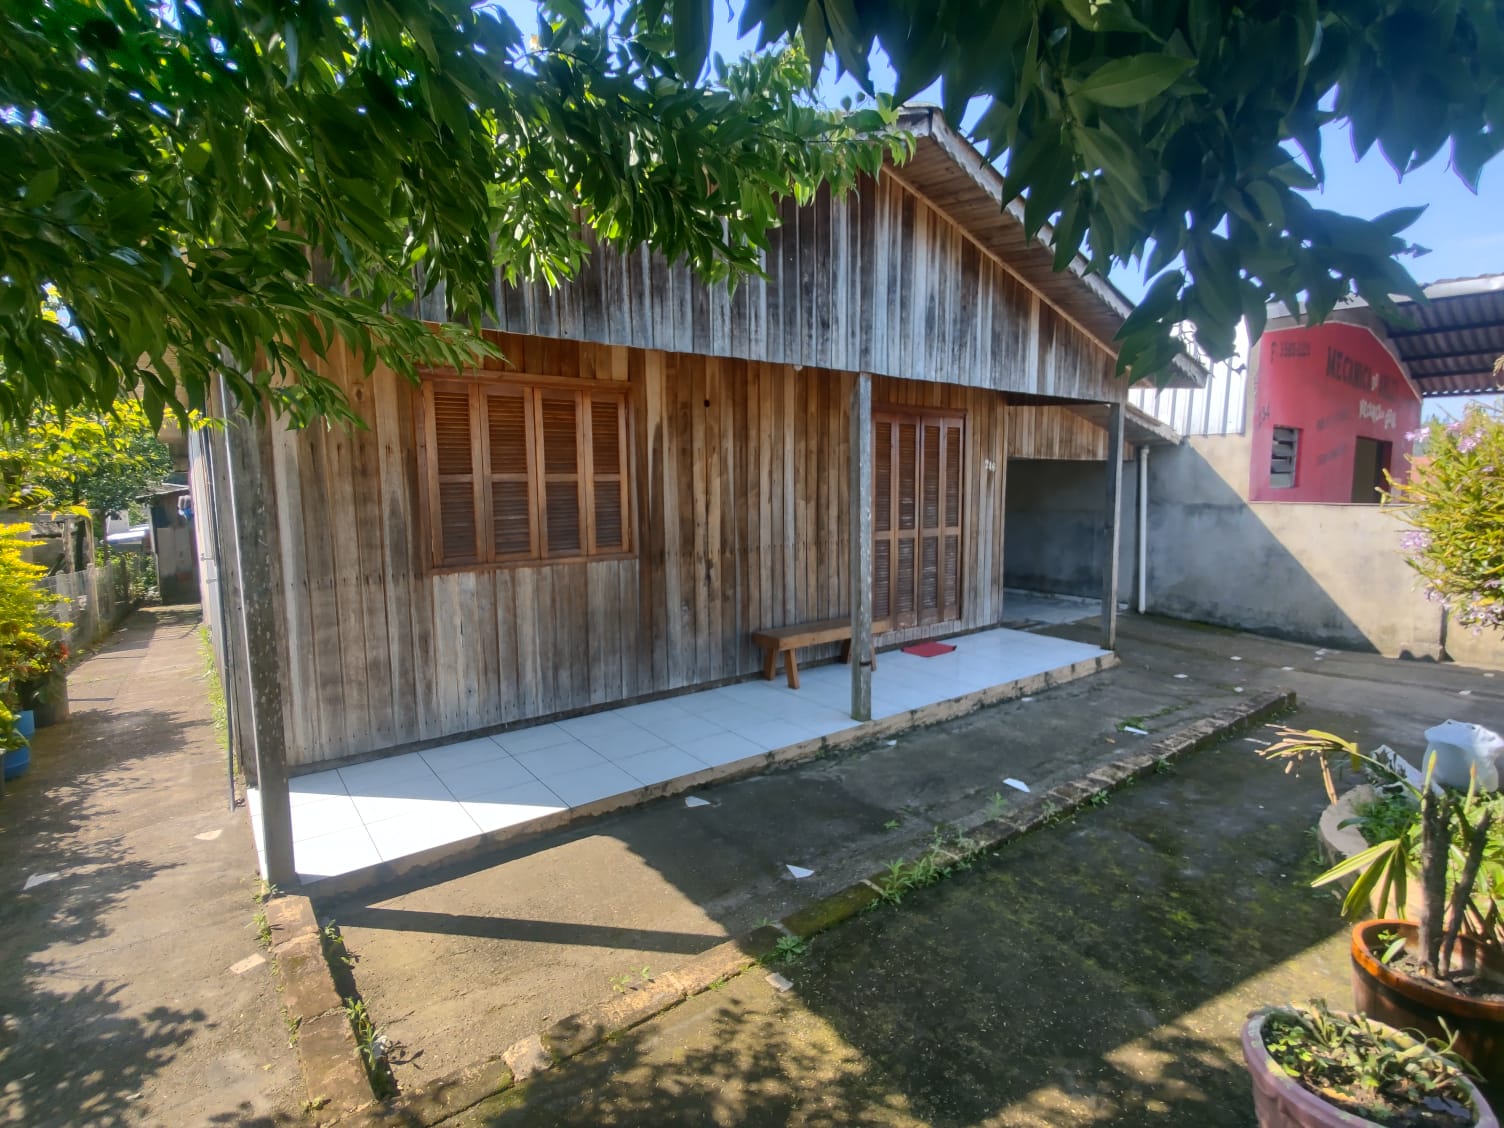 Fotos do imóvel Vendo casa no bairro Vila Nova - Sparrenberger Imóveis